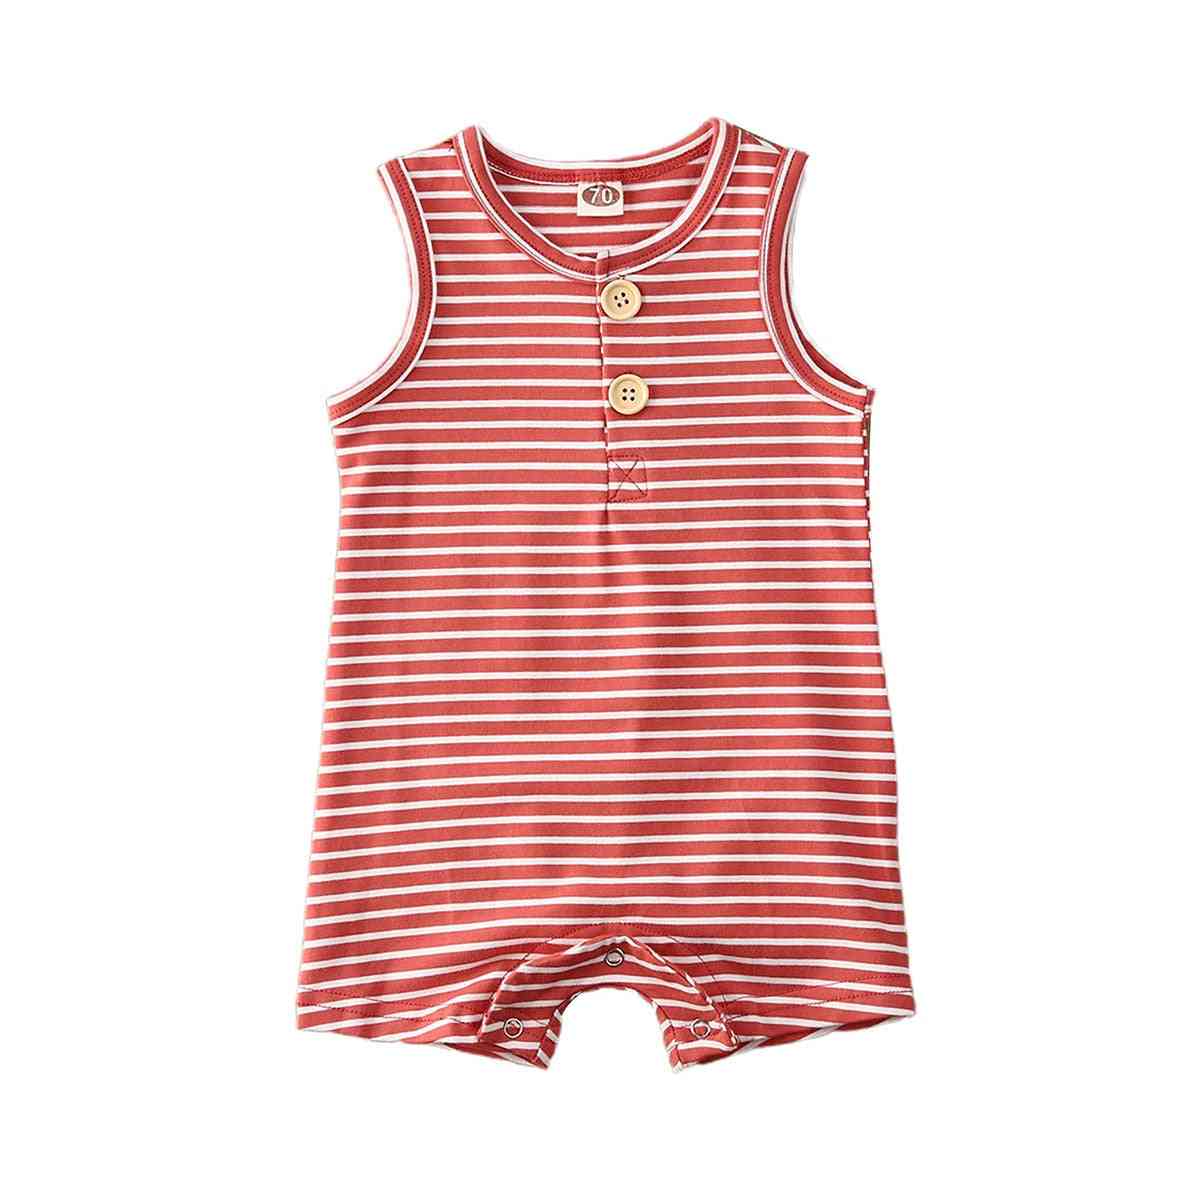 Baby sommerklær, stripete romper klær, ermeløs for gutter, jenter - brun1 / 6m